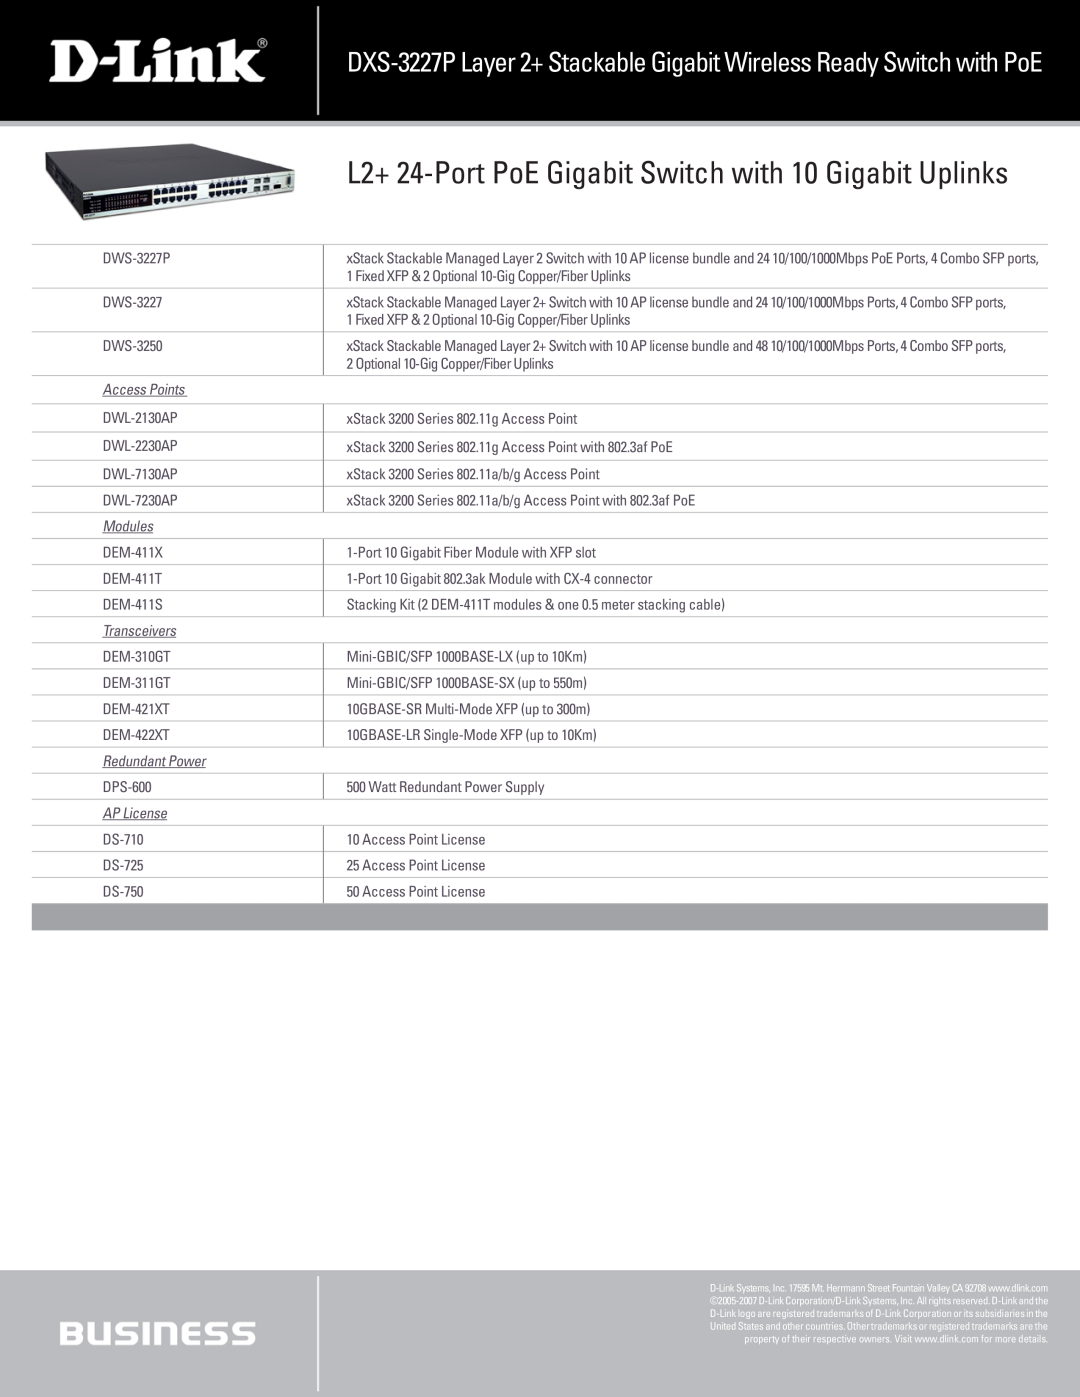 D-Link DXS-3227P L2+ 24-Port PoE Gigabit Switch with 10 Gigabit Uplinks, Access Points, Modules, Transceivers, AP License 